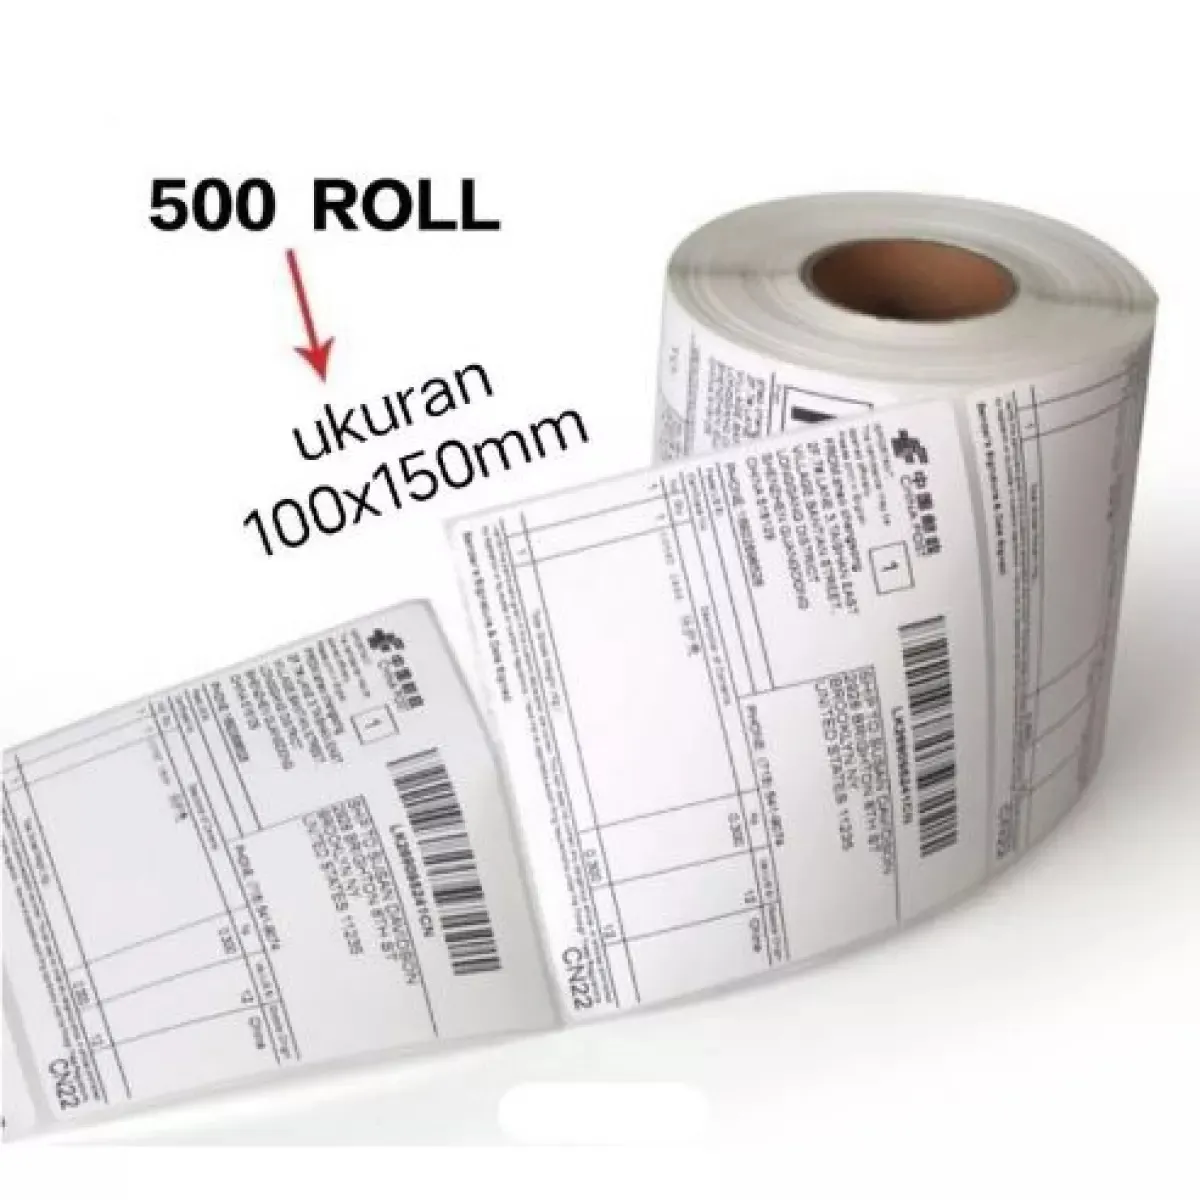 Label Thermal Printer Kertas Stiker Sticker Label Isi 500 Pcs / ROLL Ukuran  100 x 150 Termal 100x150 mm 10x15 cm Continuous dengan perekat untuk print  cetak barcode | Lazada Indonesia